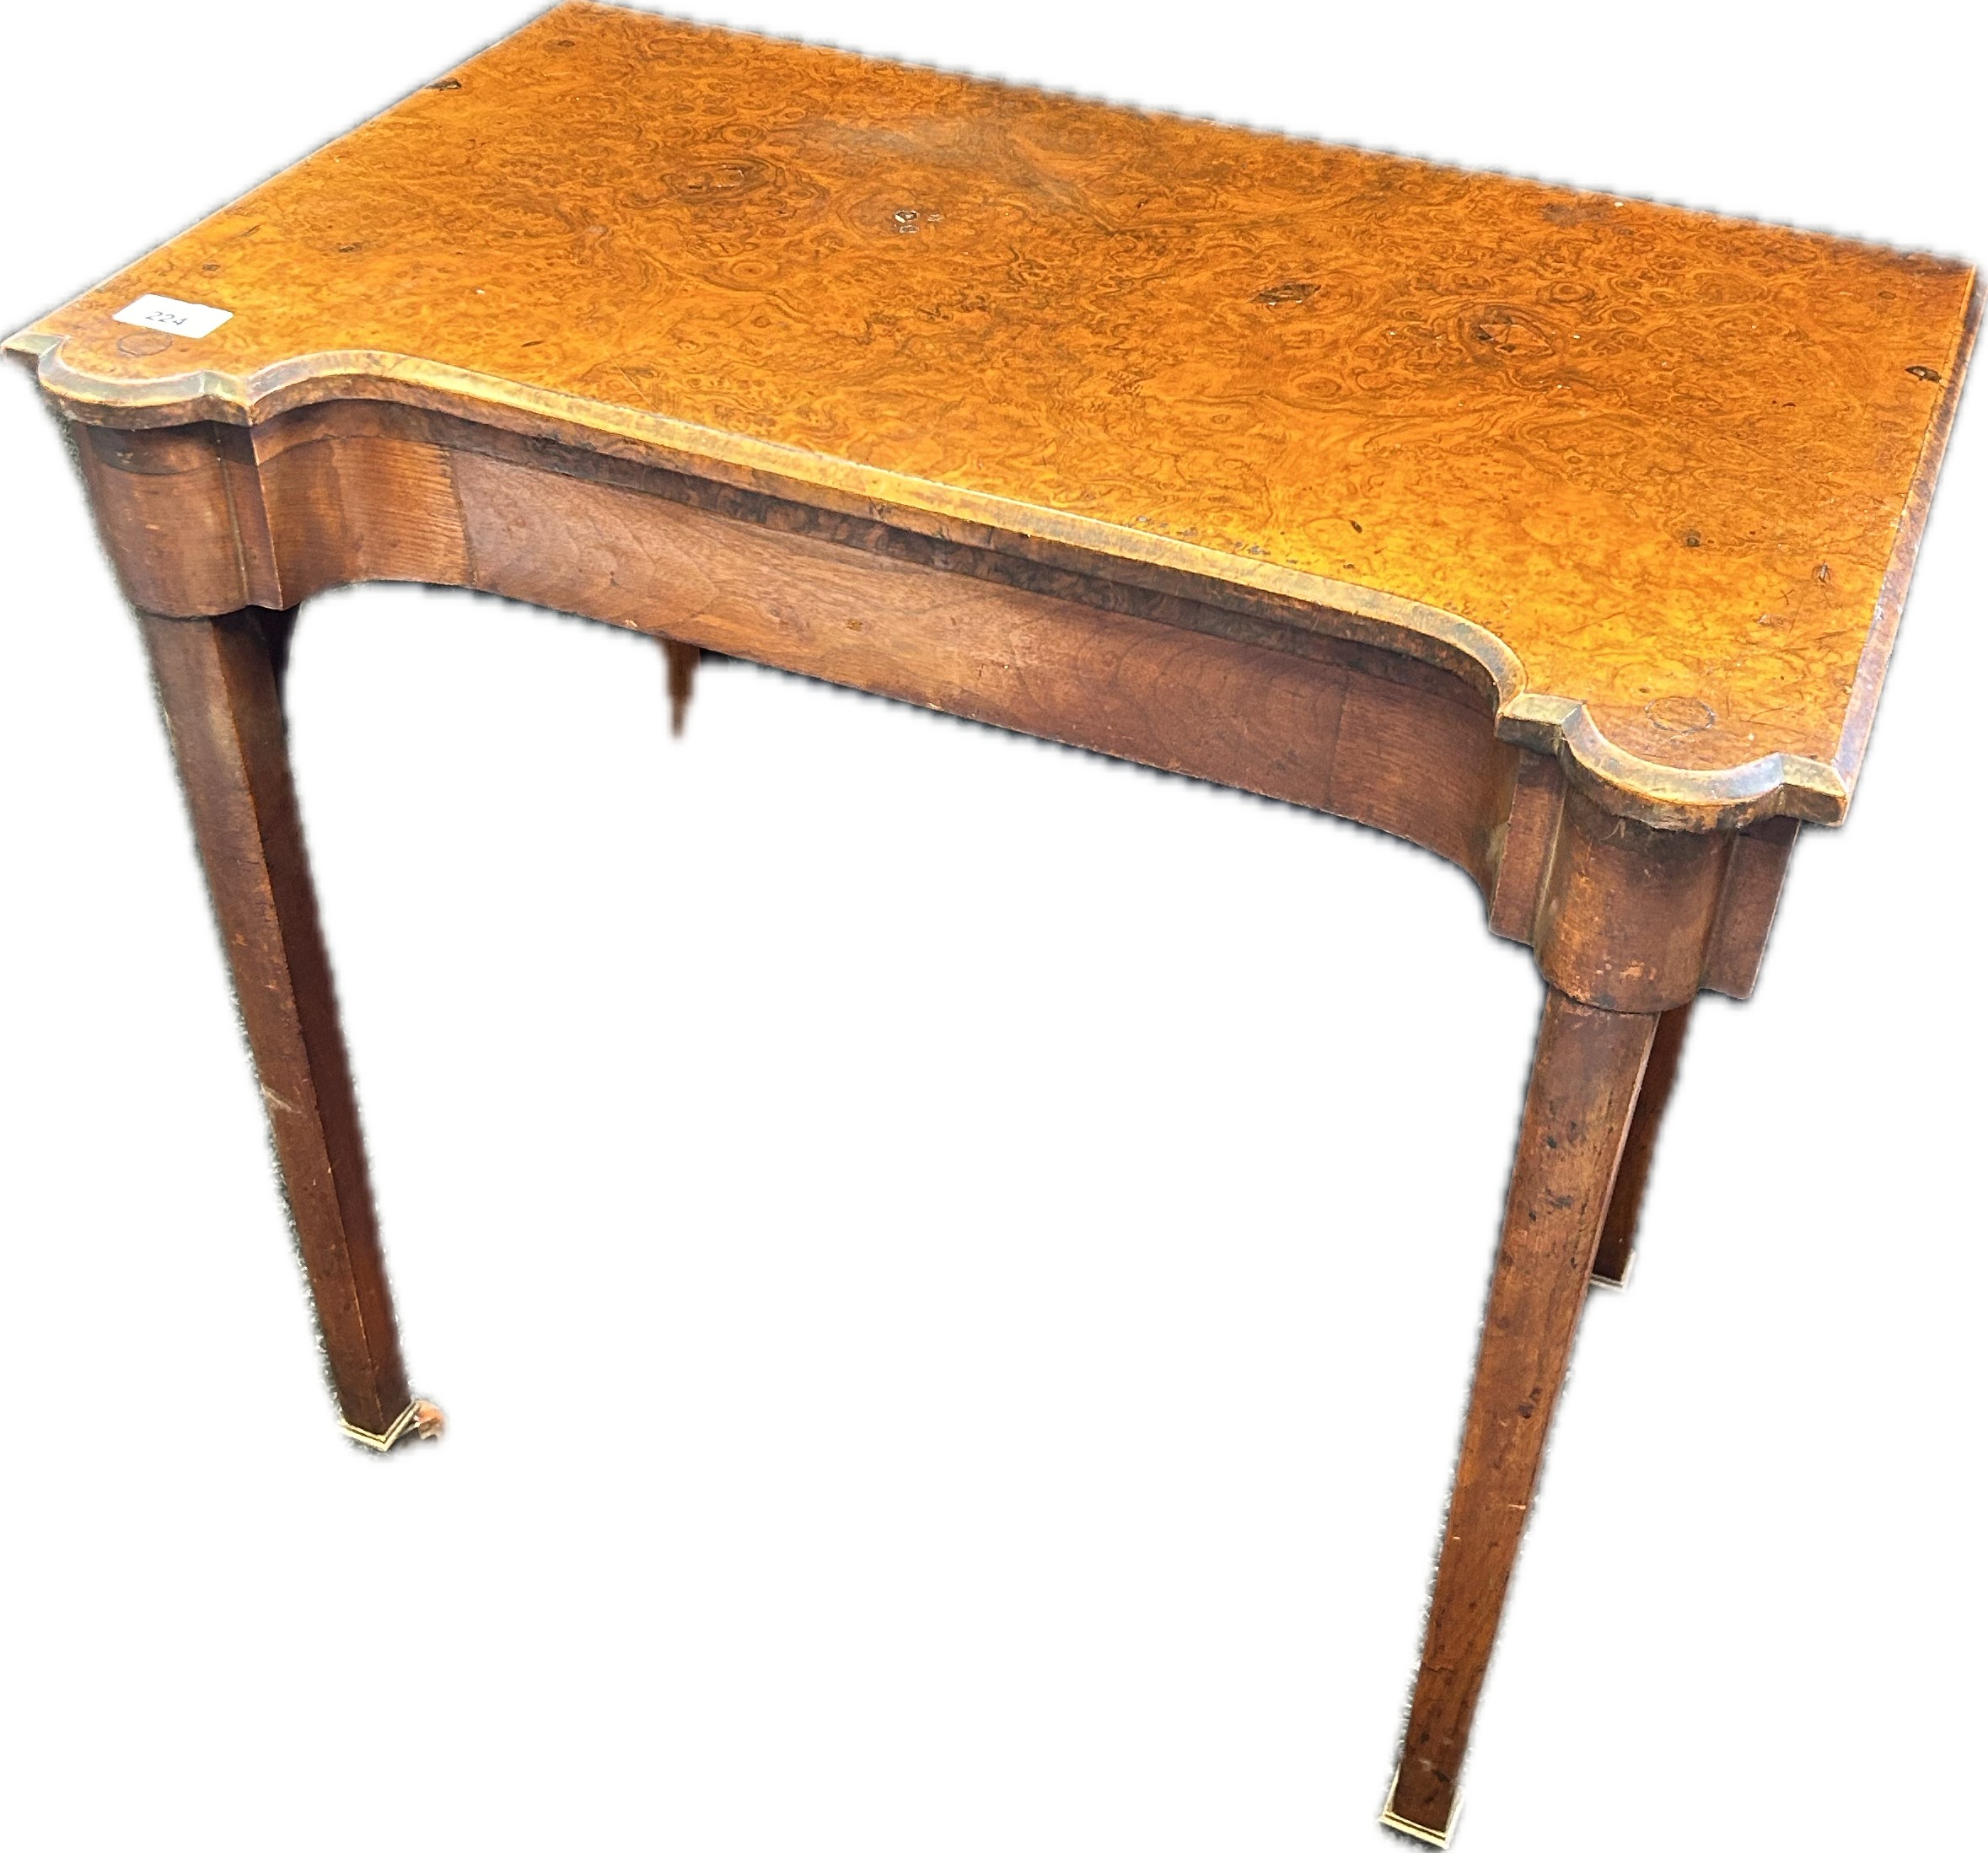 19th Century serpentine shaped walnut tea table, raised on square tapered legs - Image 2 of 2